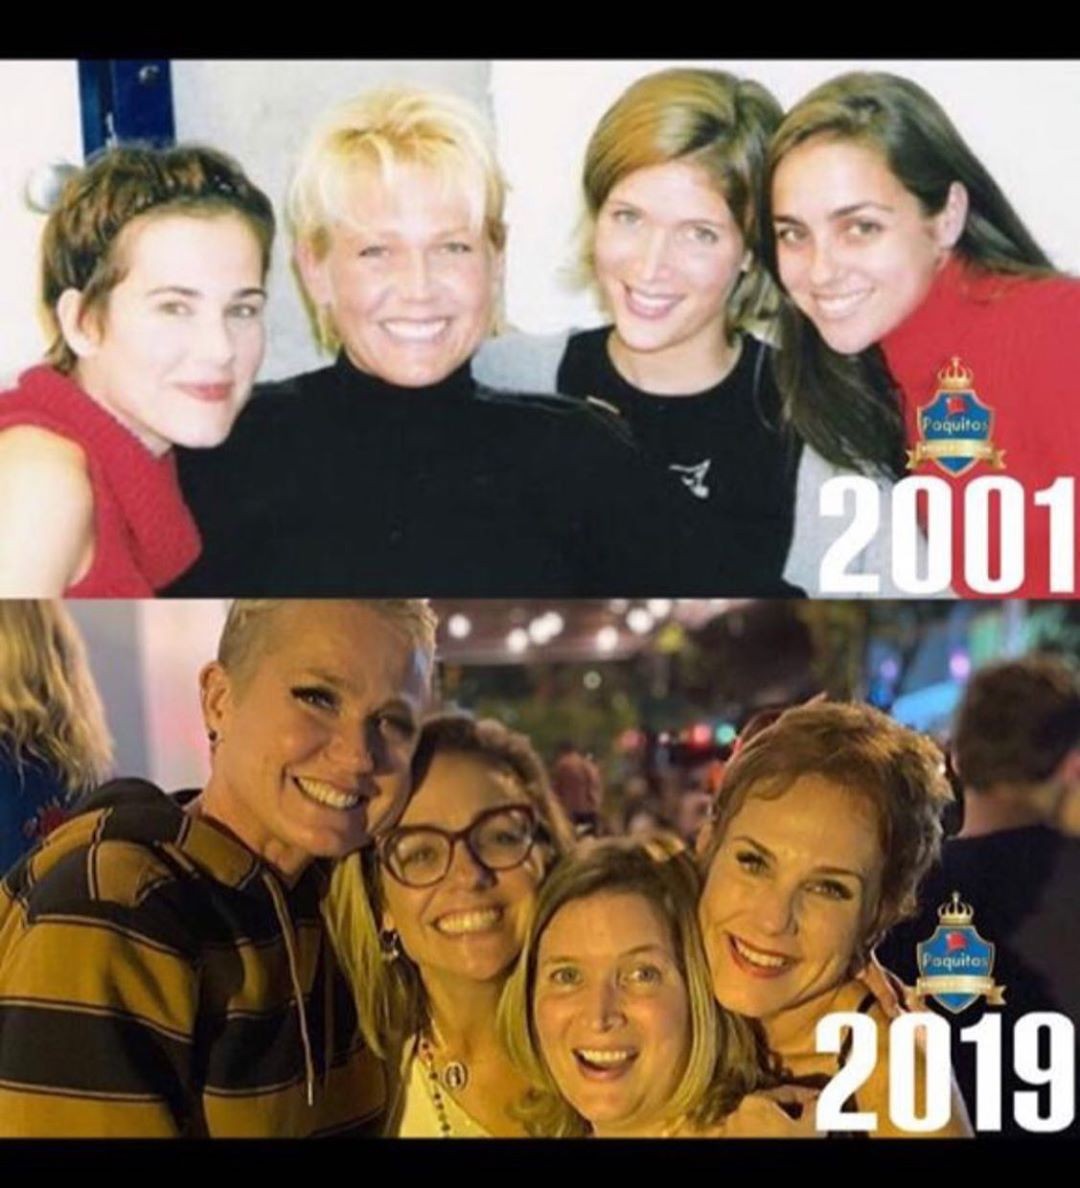  Andrea Veiga mostra antes e depois de Xuxa e de Paquitas (Foto: Reprodução/Instagram)